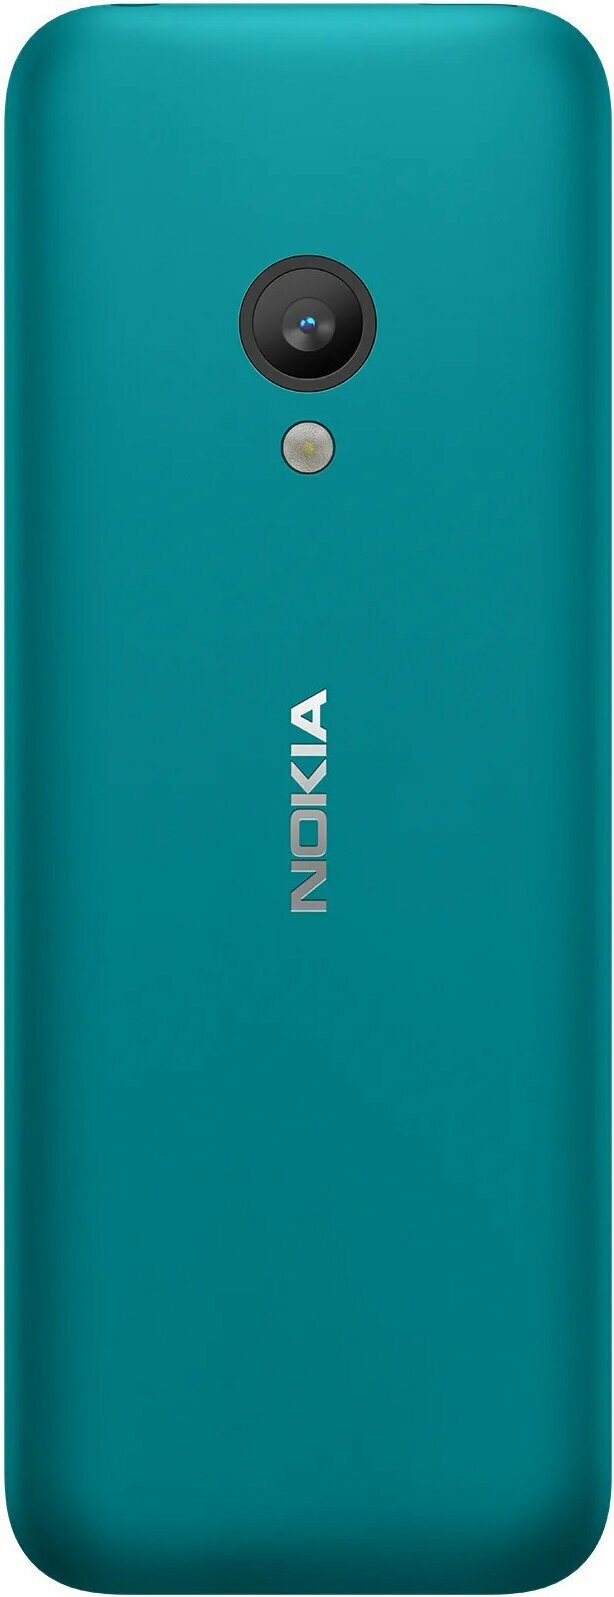 Телефон Nokia 150 (2020) Dual Sim, 2 SIM, бирюзовый - фотография № 8